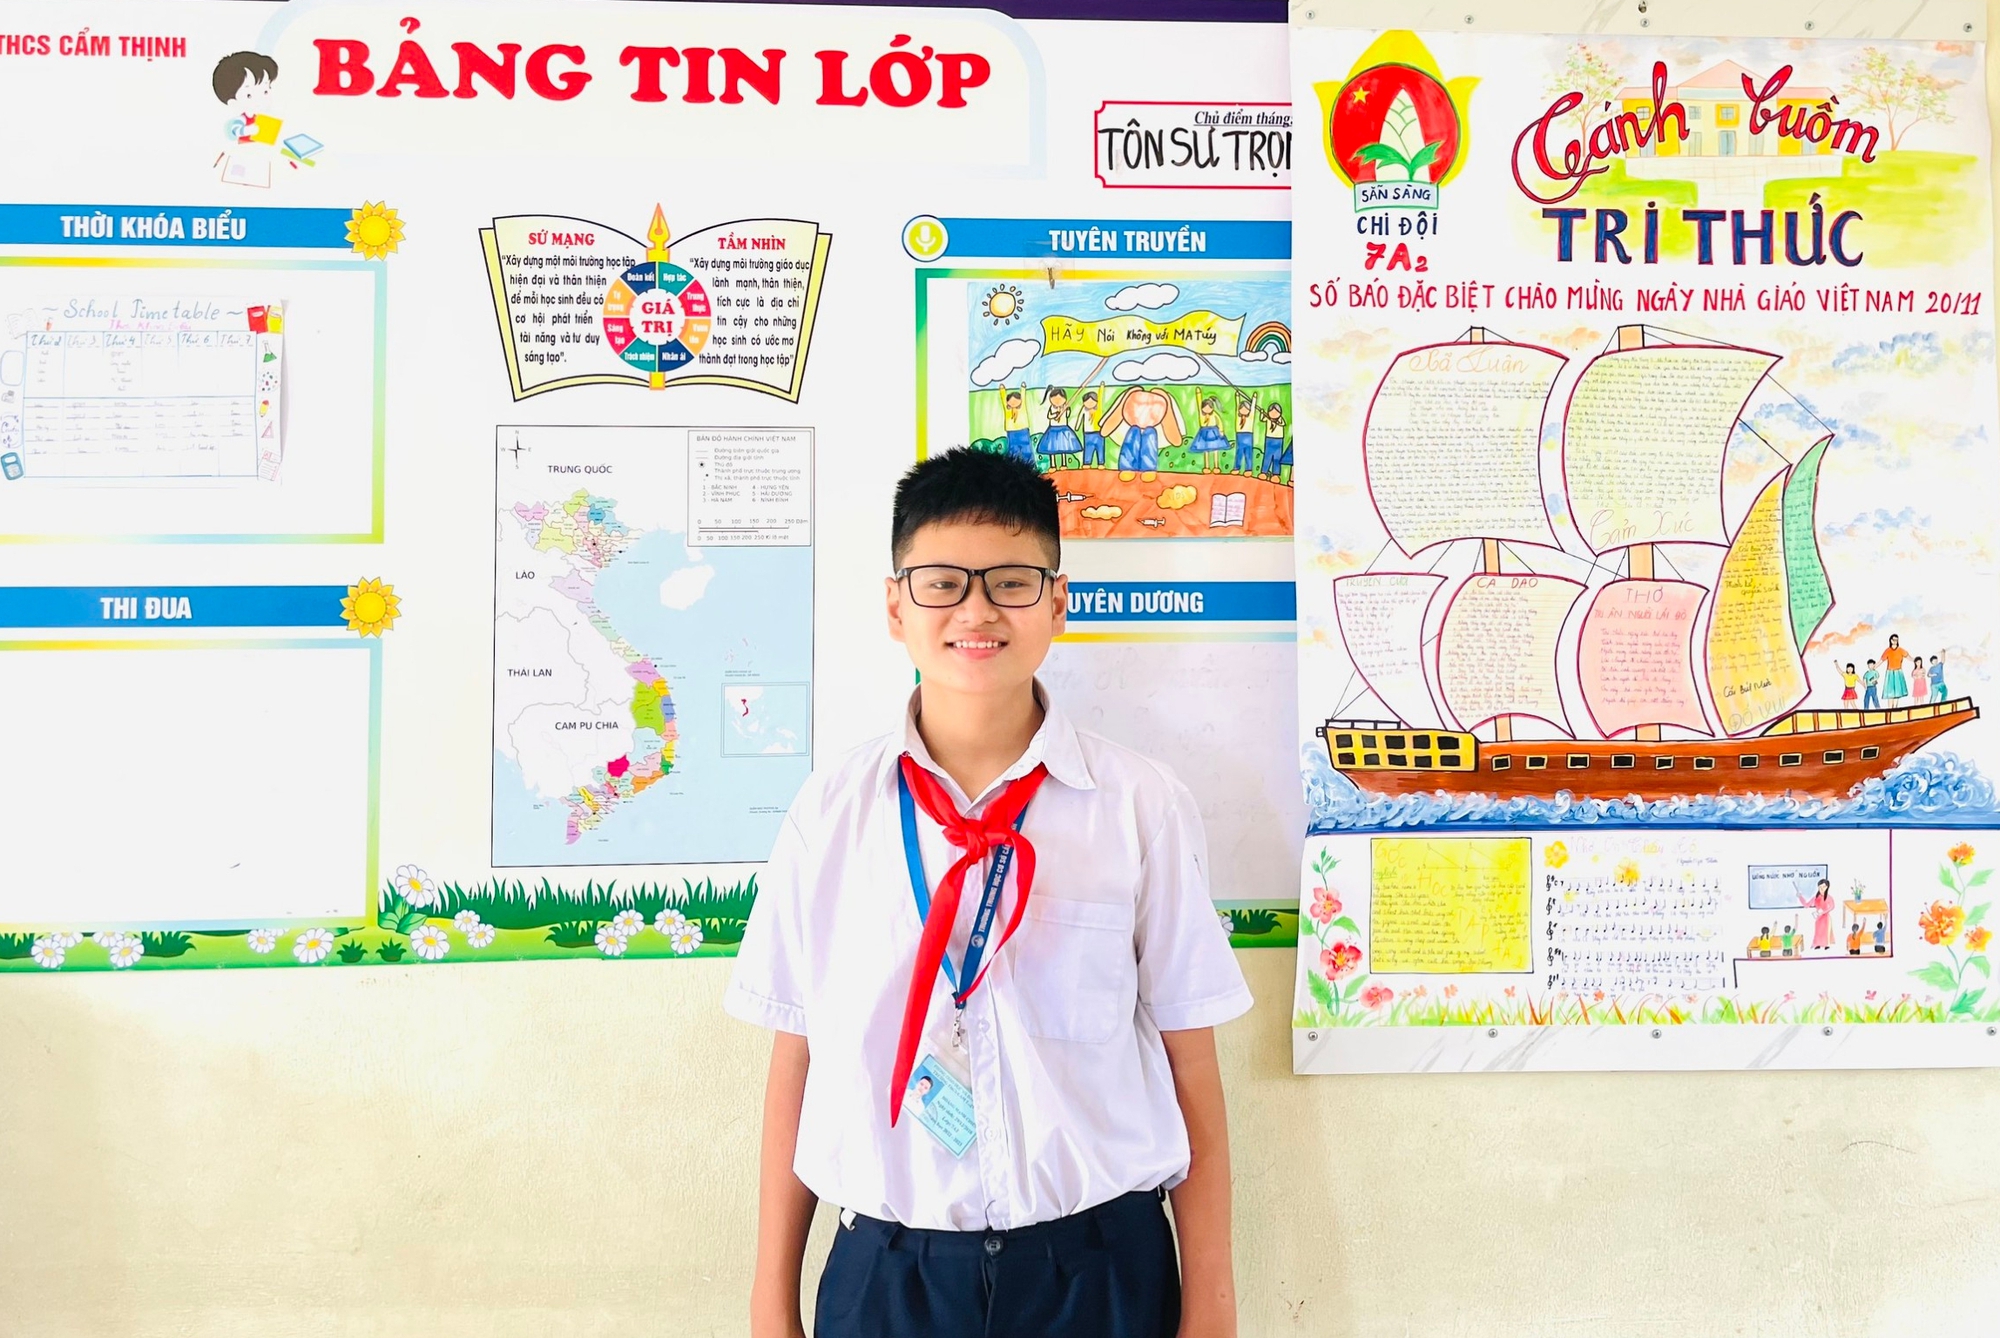 Quảng Ninh: Học sinh lớp 7 cứu cụ ông thoát khỏi đoàn tàu hỏa đang lao đến - Ảnh 1.